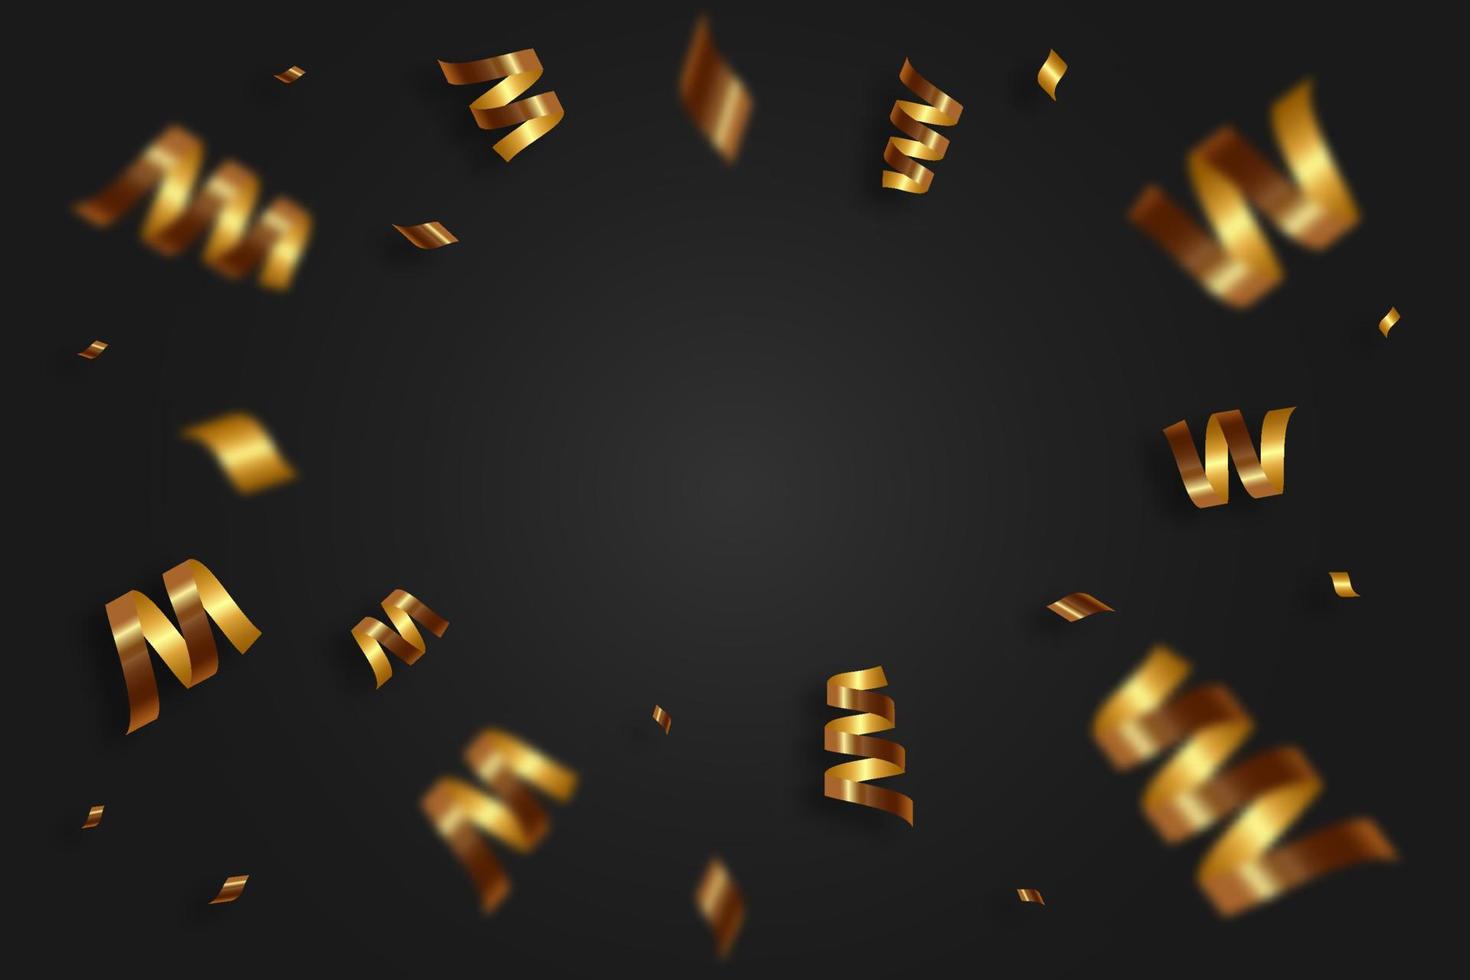 chute de confettis dorés brillants, ruban adhésif, serpentine sur fond noir. guirlande festive lumineuse de couleur or. vecteur